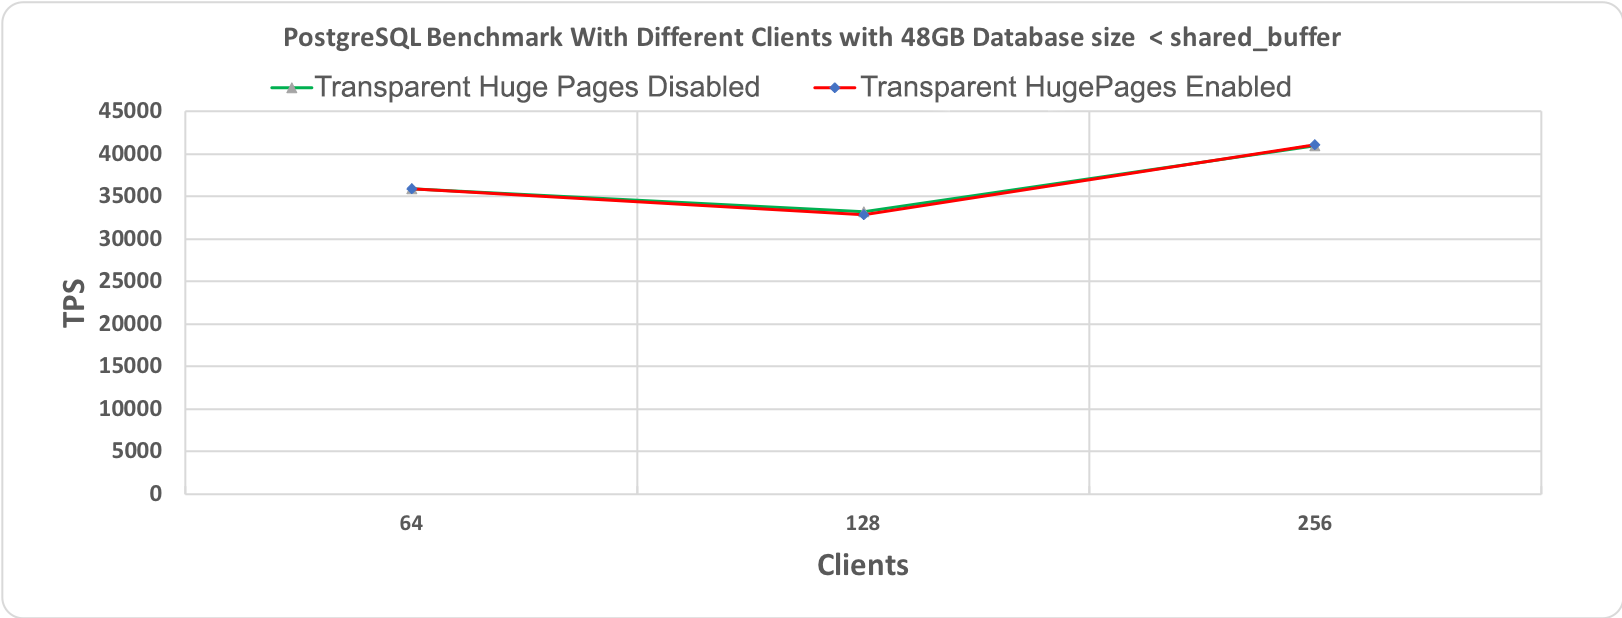 Рис. 1.1 Тест производительности PostgreSQL, длительность 10 минут при размере базы данных (48 гигабайт) < shared_buffer (64 гигабайт)